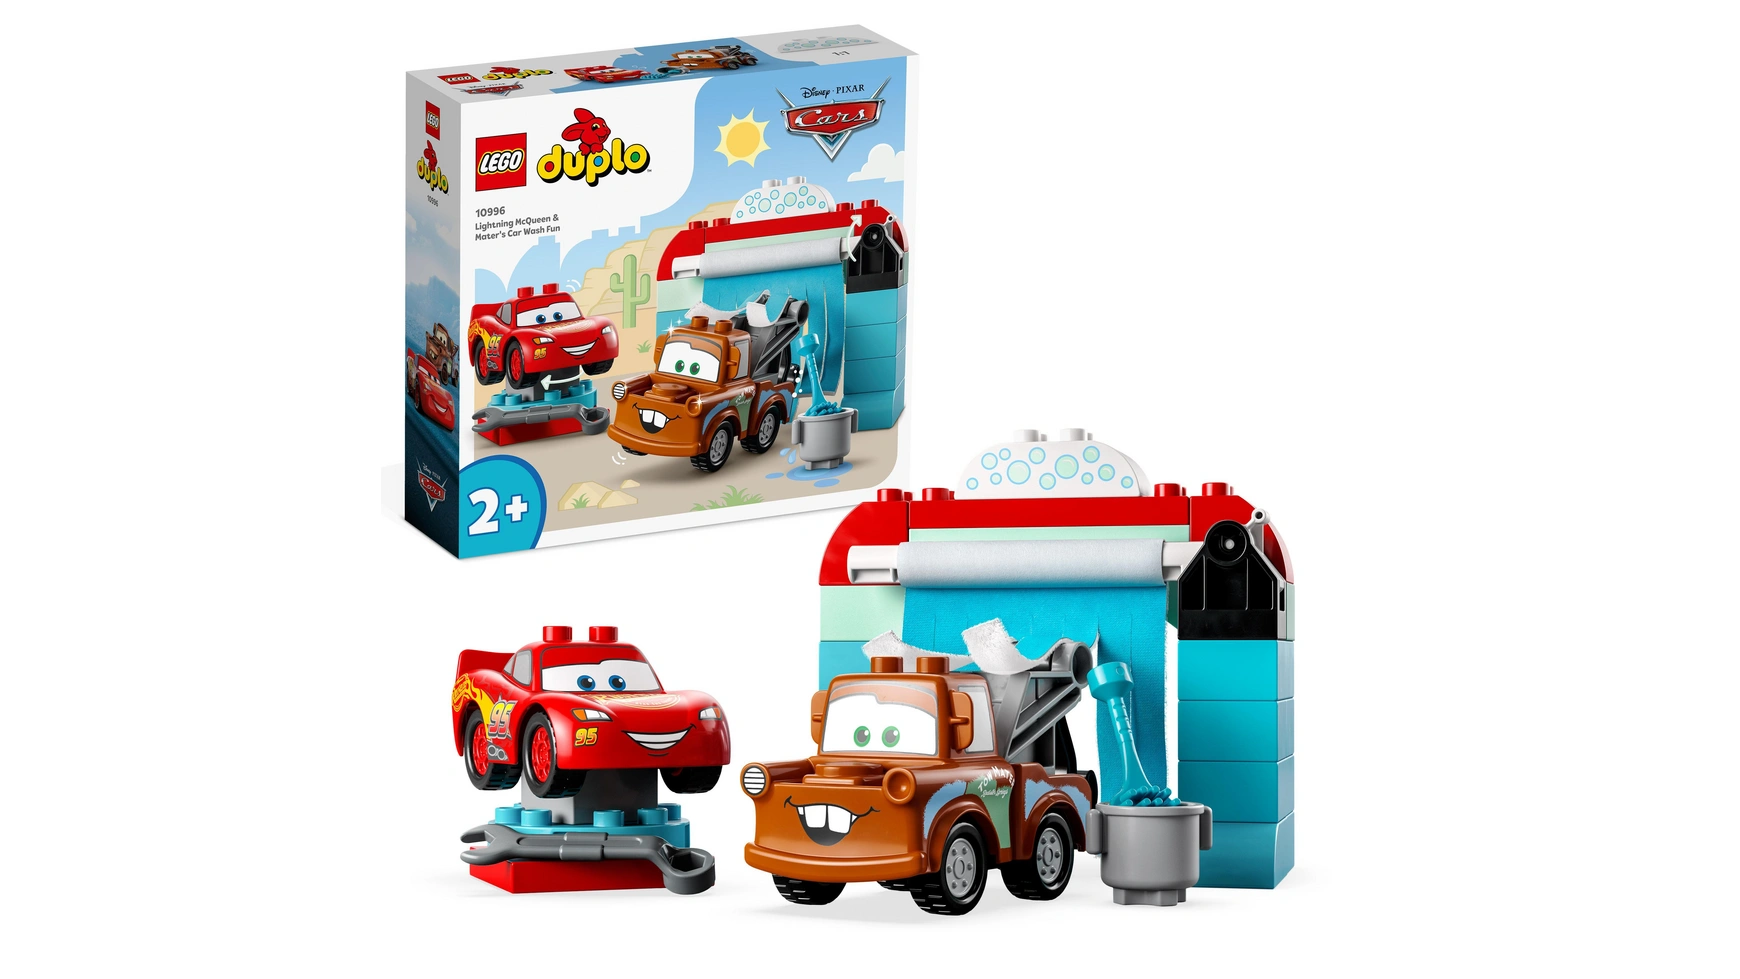 Lego DUPLO Тачки Диснея и Пиксара Молния МакКуин и Мэтр на автомойке lego duplo town ветряная турбина и электромобиль развивающая игрушка для детей от 2 лет и старше